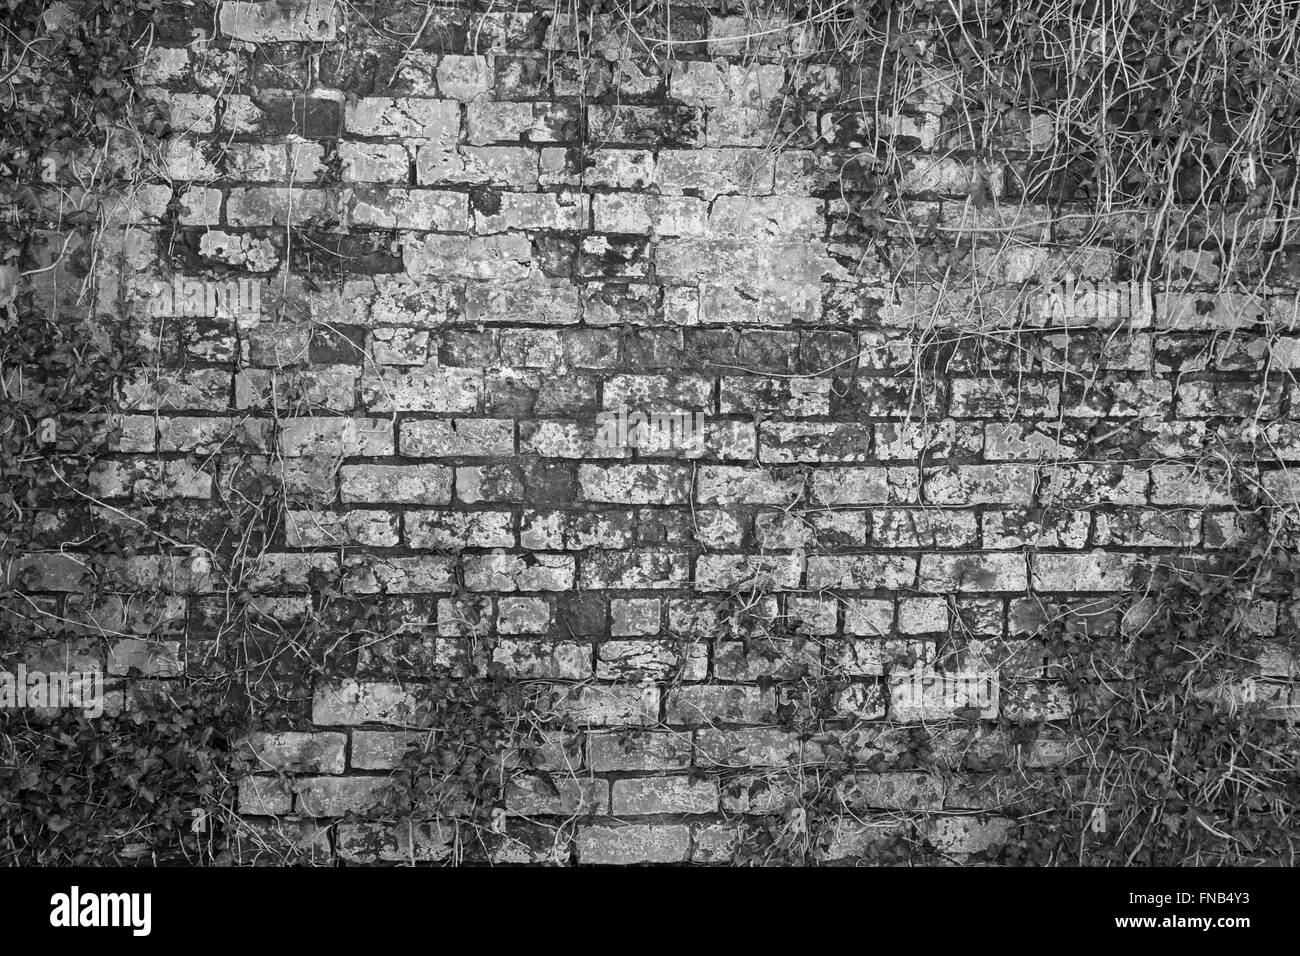 Vieux Mur texture background Banque D'Images